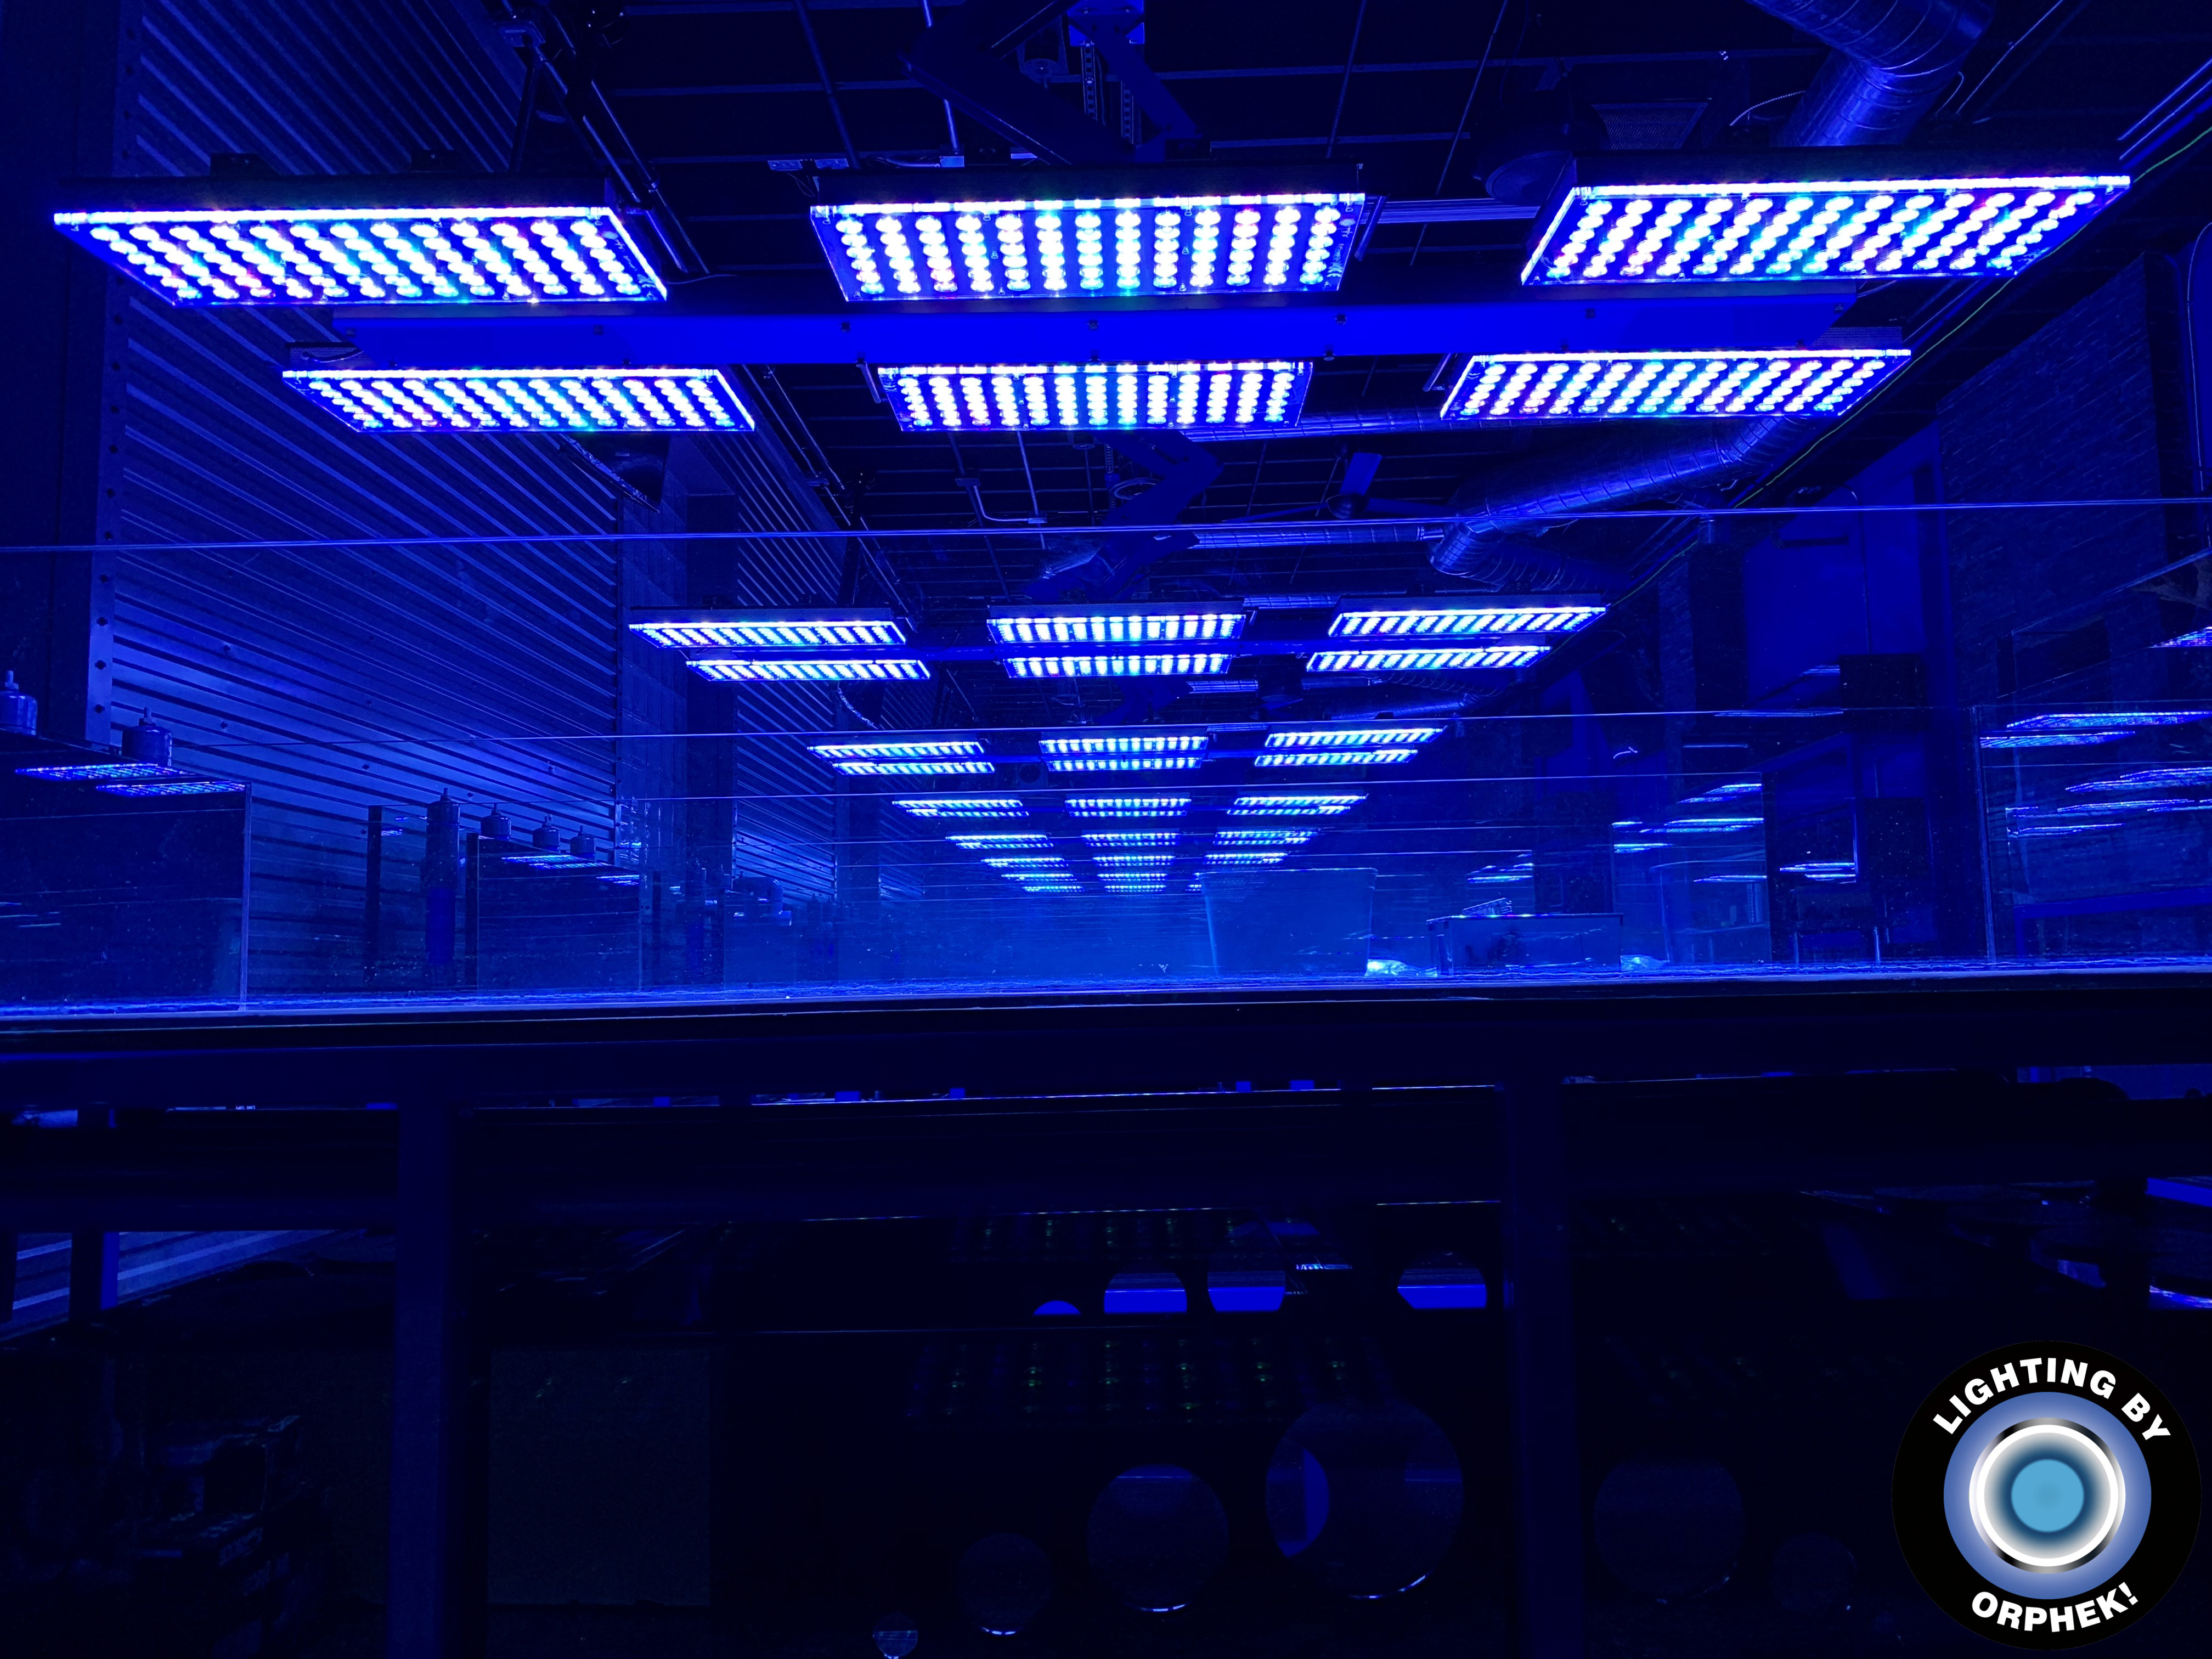 सबसे मजबूत मछलीघर 2020 प्रकाश व्यवस्था का नेतृत्व किया